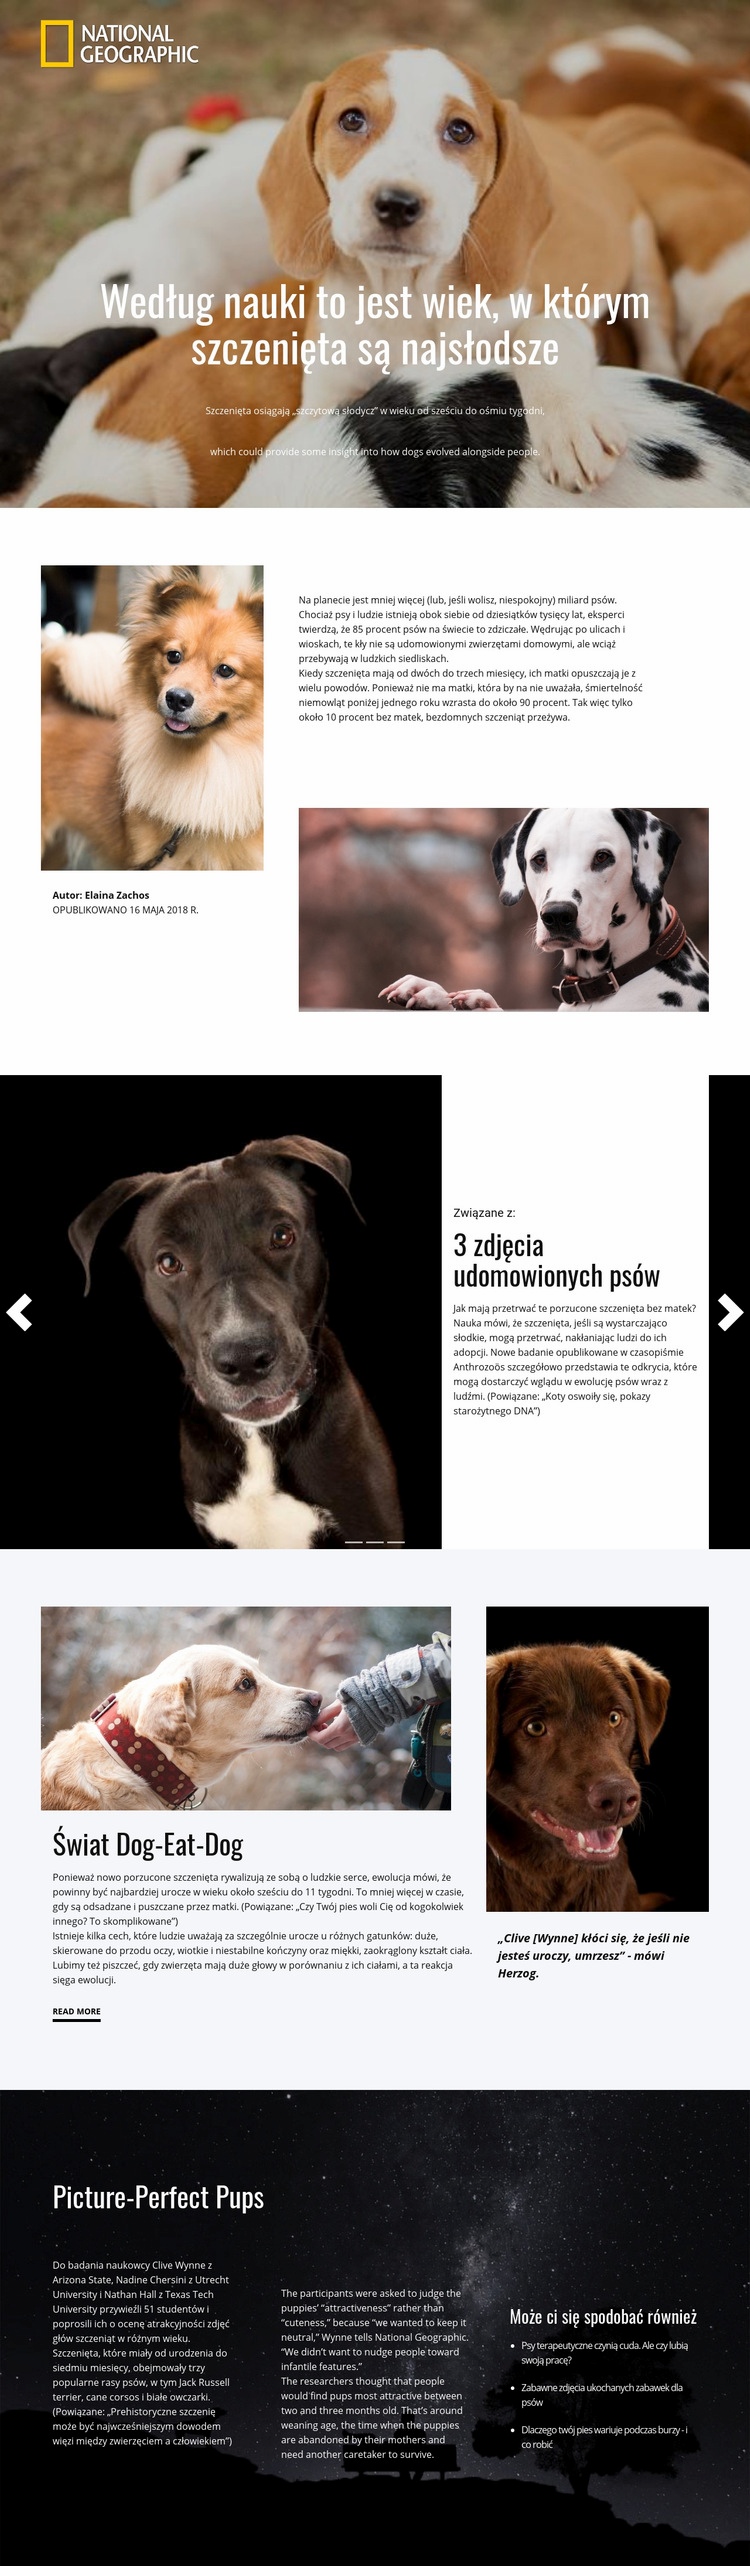 Najsłodsze zwierzęta domowe Makieta strony internetowej